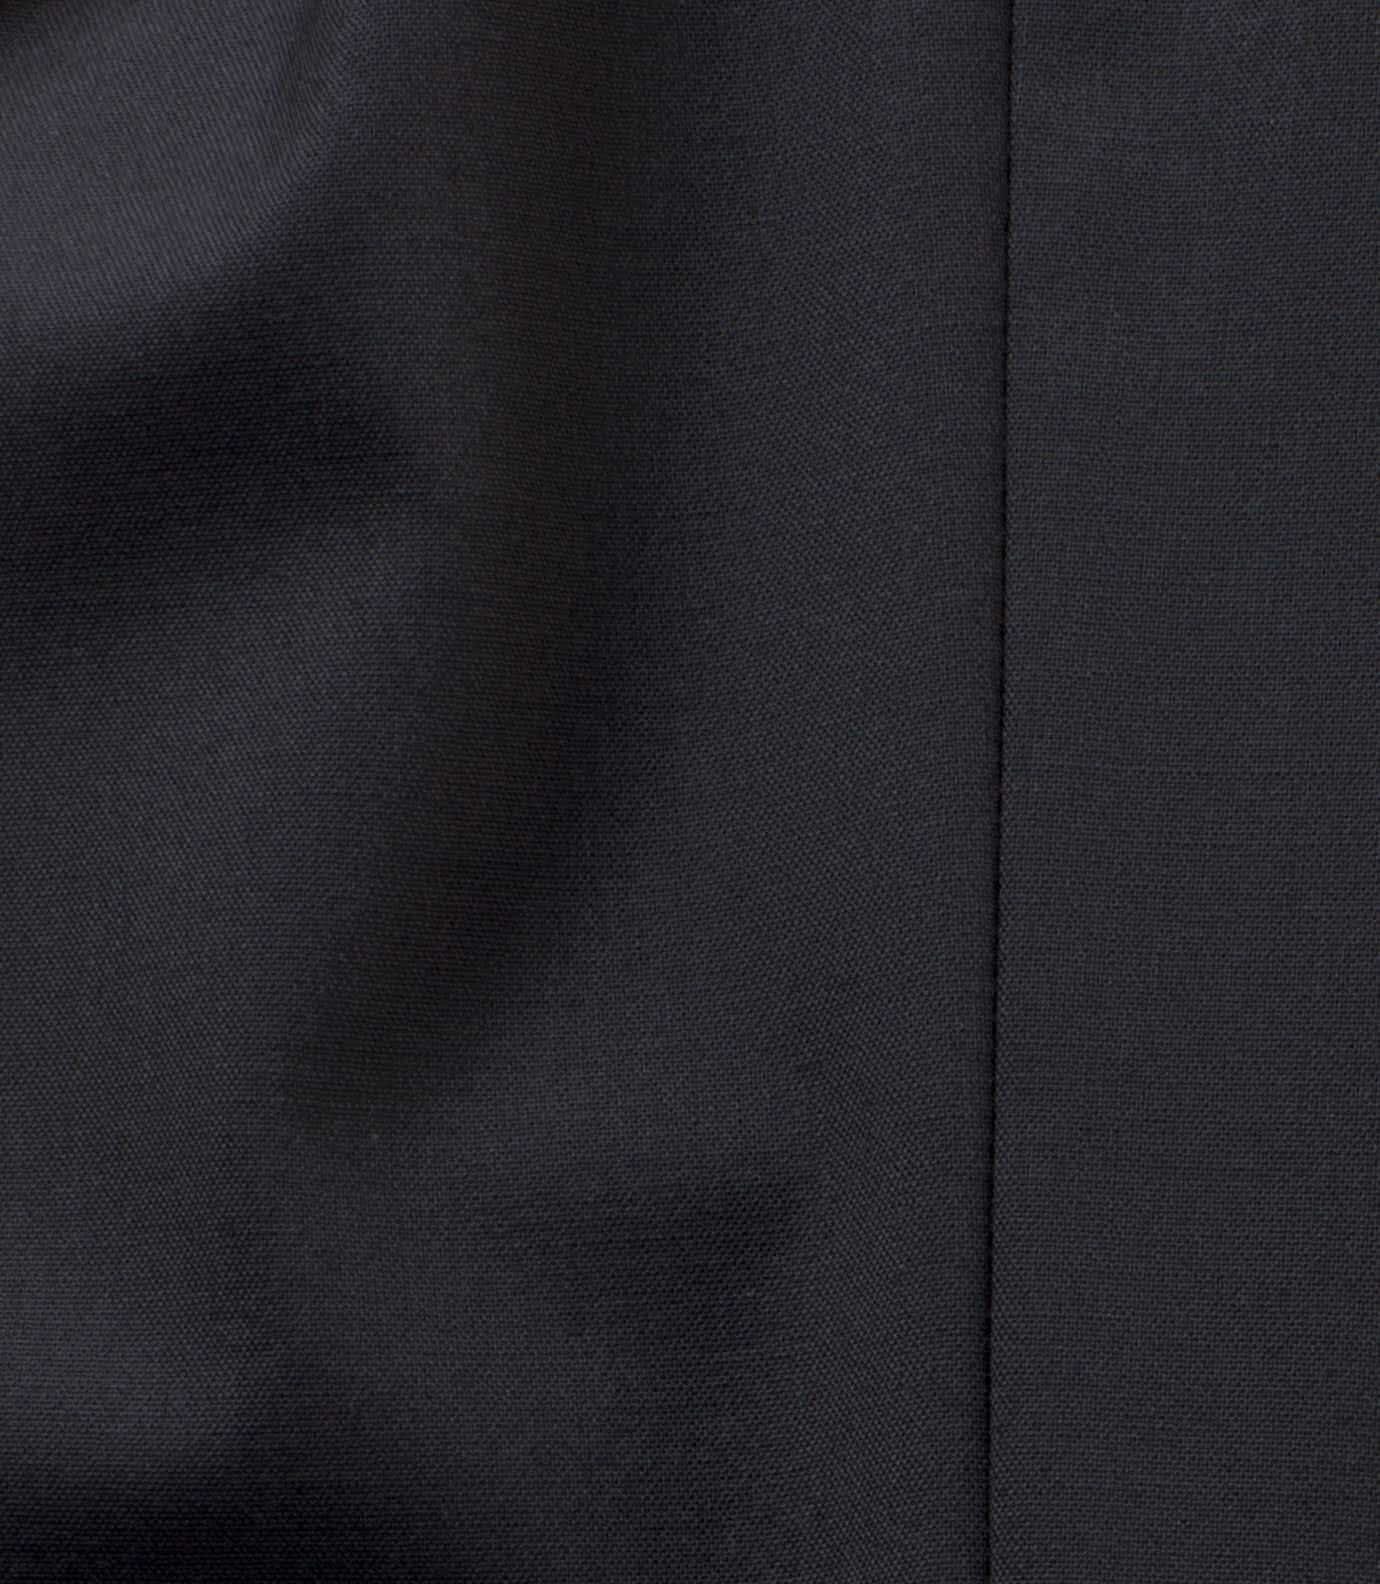 MEYER Anzughose schwarz Modern Angabe) fit (1-tlg., keine 09